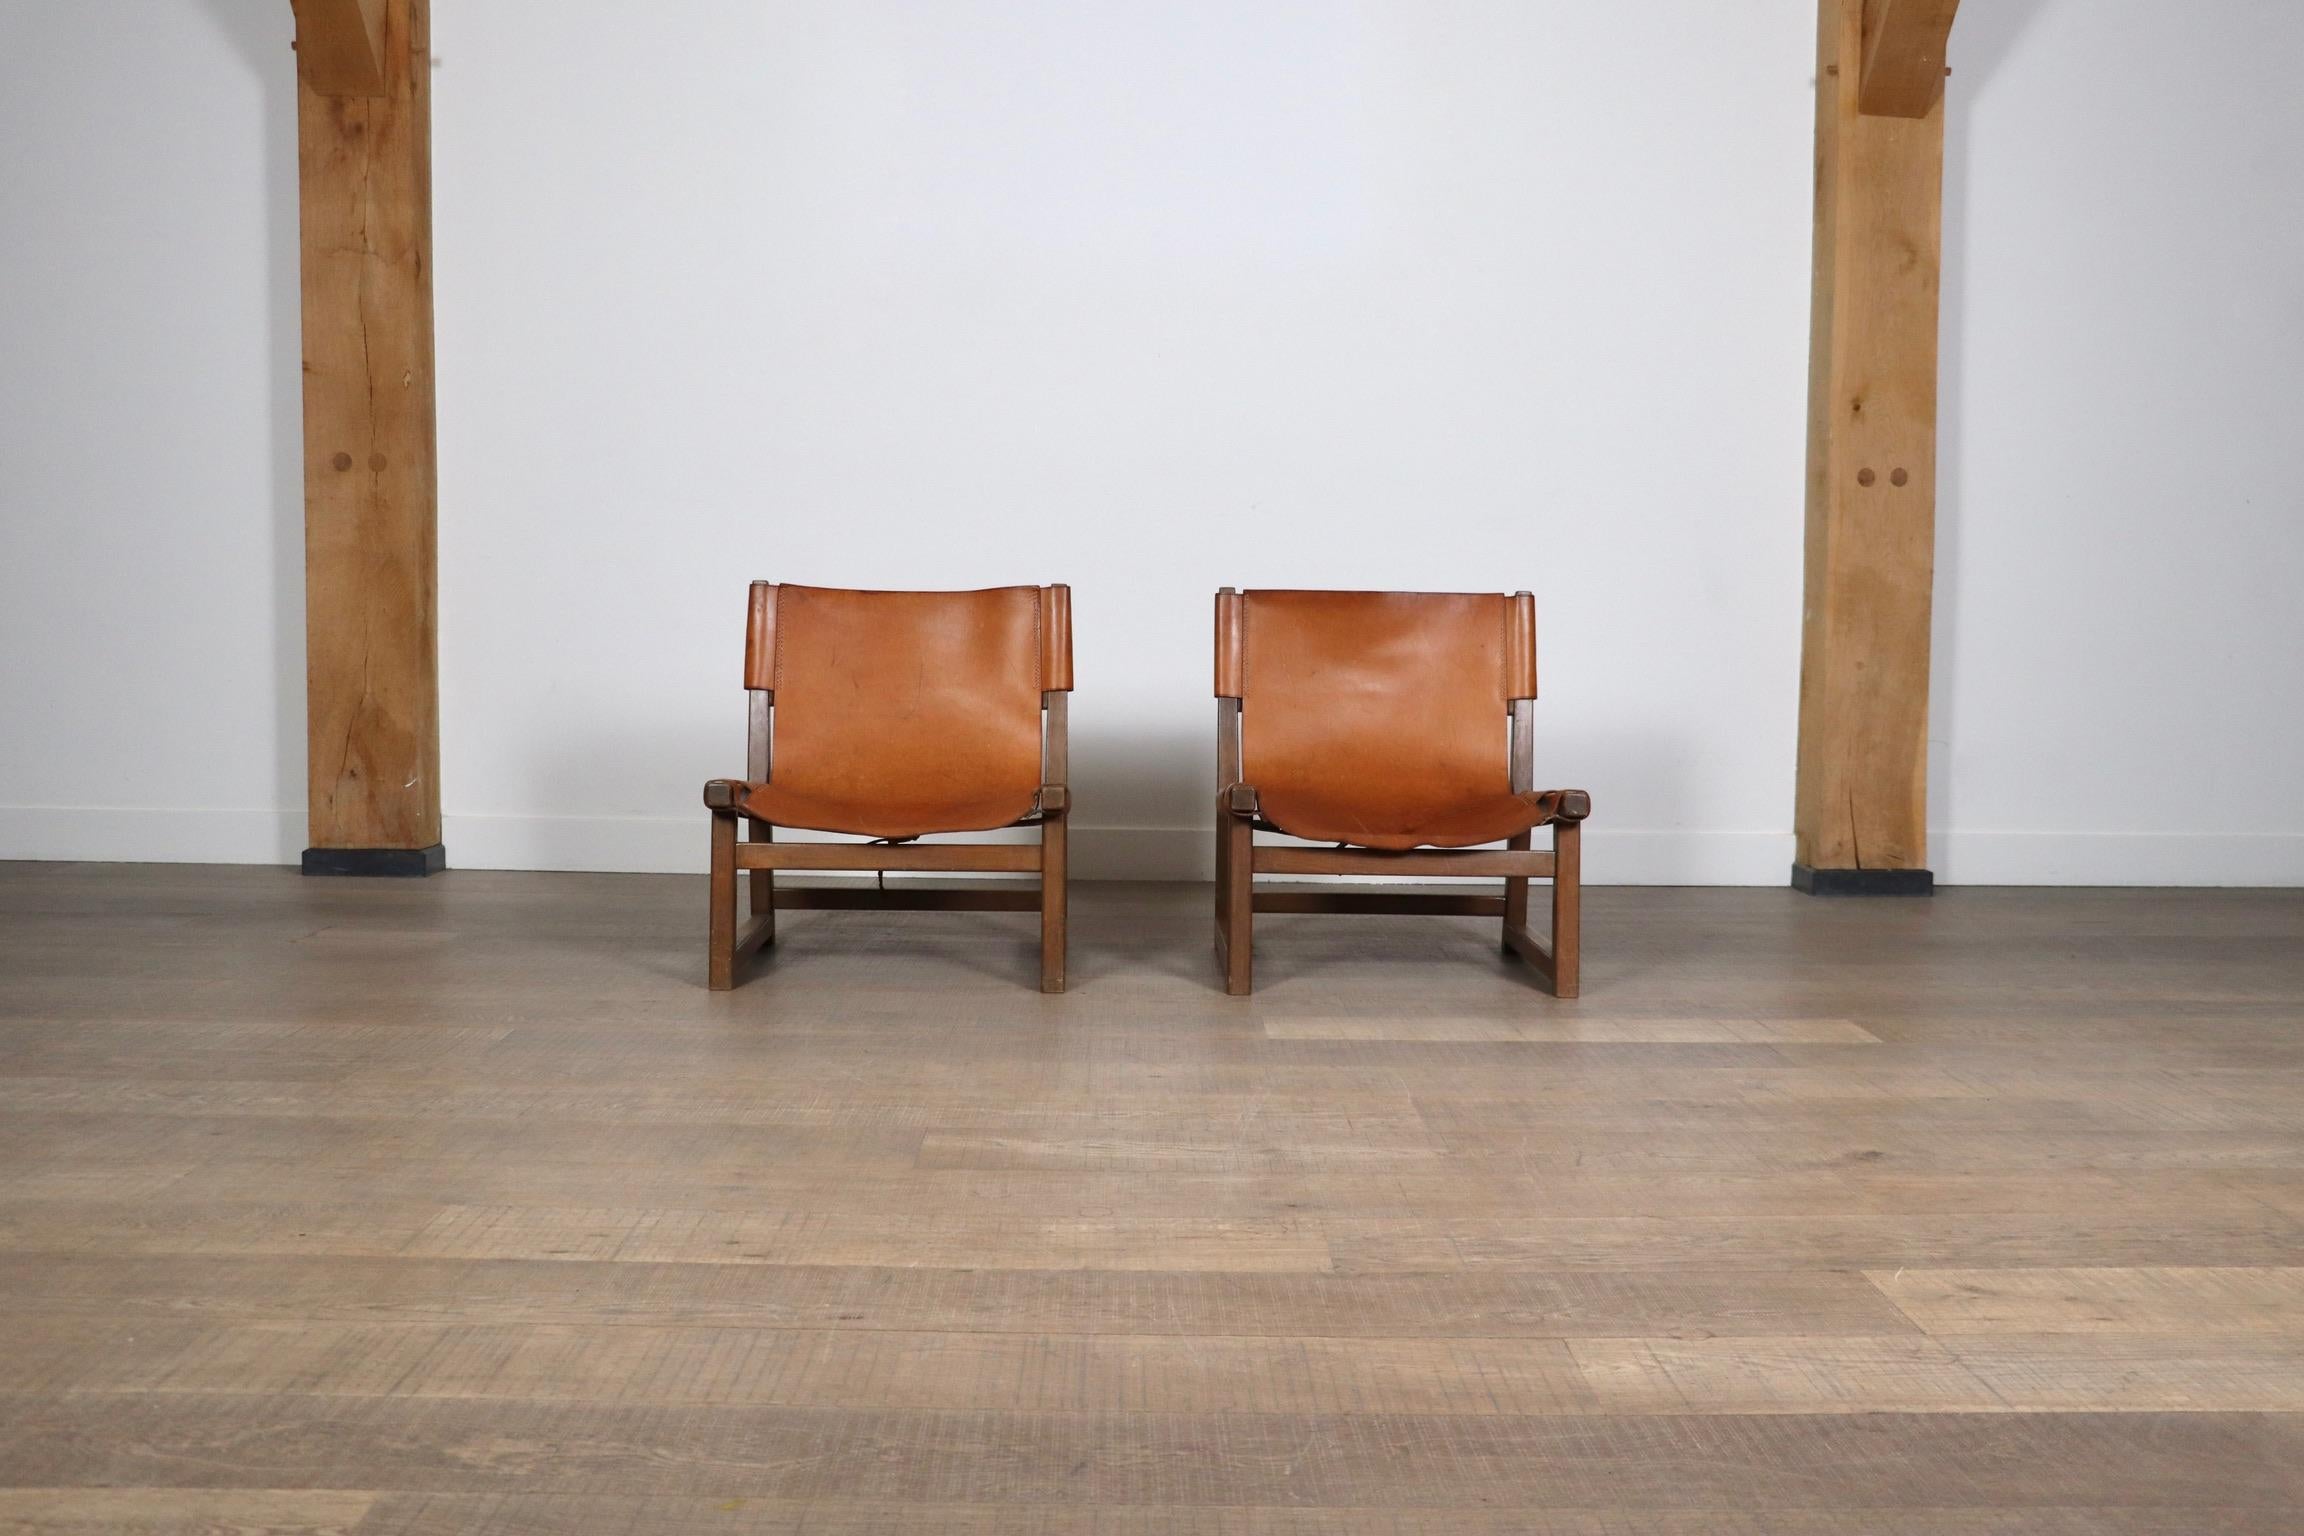 Fantastique paire de chaises Riaza en cuir cognac par Paco Muñoz pour Darro Gallery, Espagne, années 1960.
S'inspirant de l'esthétique des chaises de chasse, le revêtement en cuir cognac, vaguement attaché au cadre par des sangles, ajoute une touche